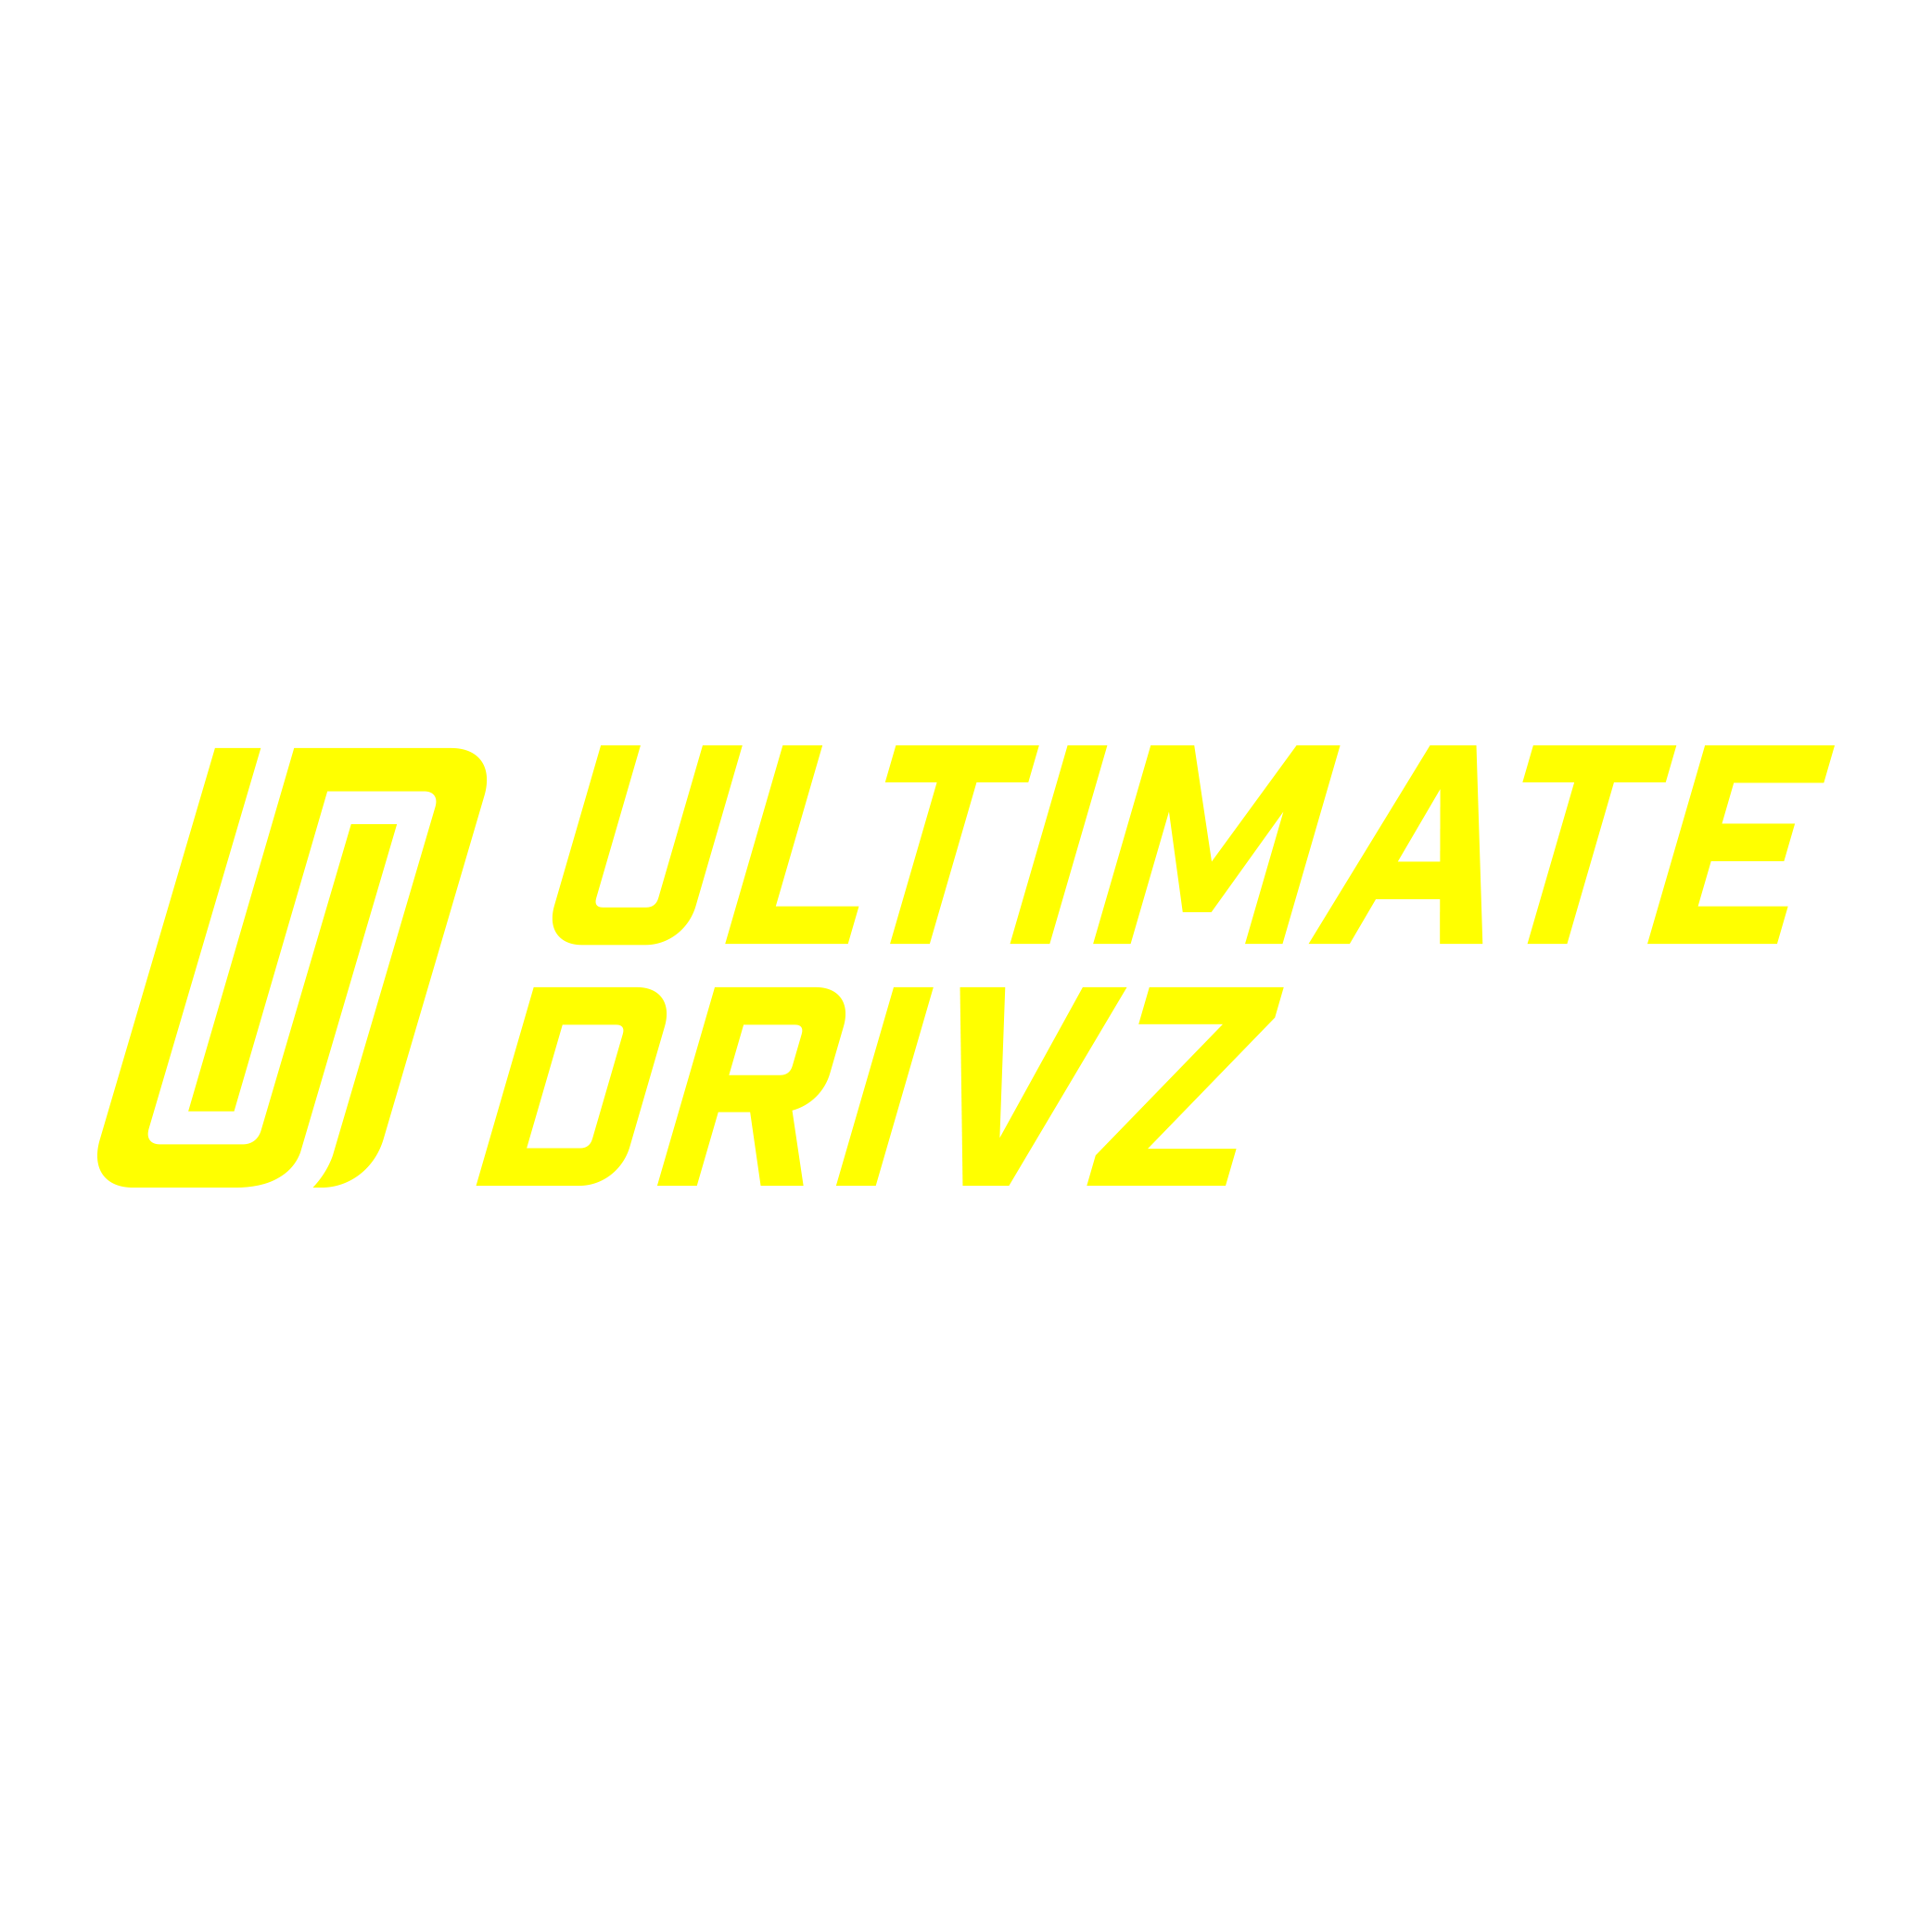 Logo of our partner Ultimate Drivz